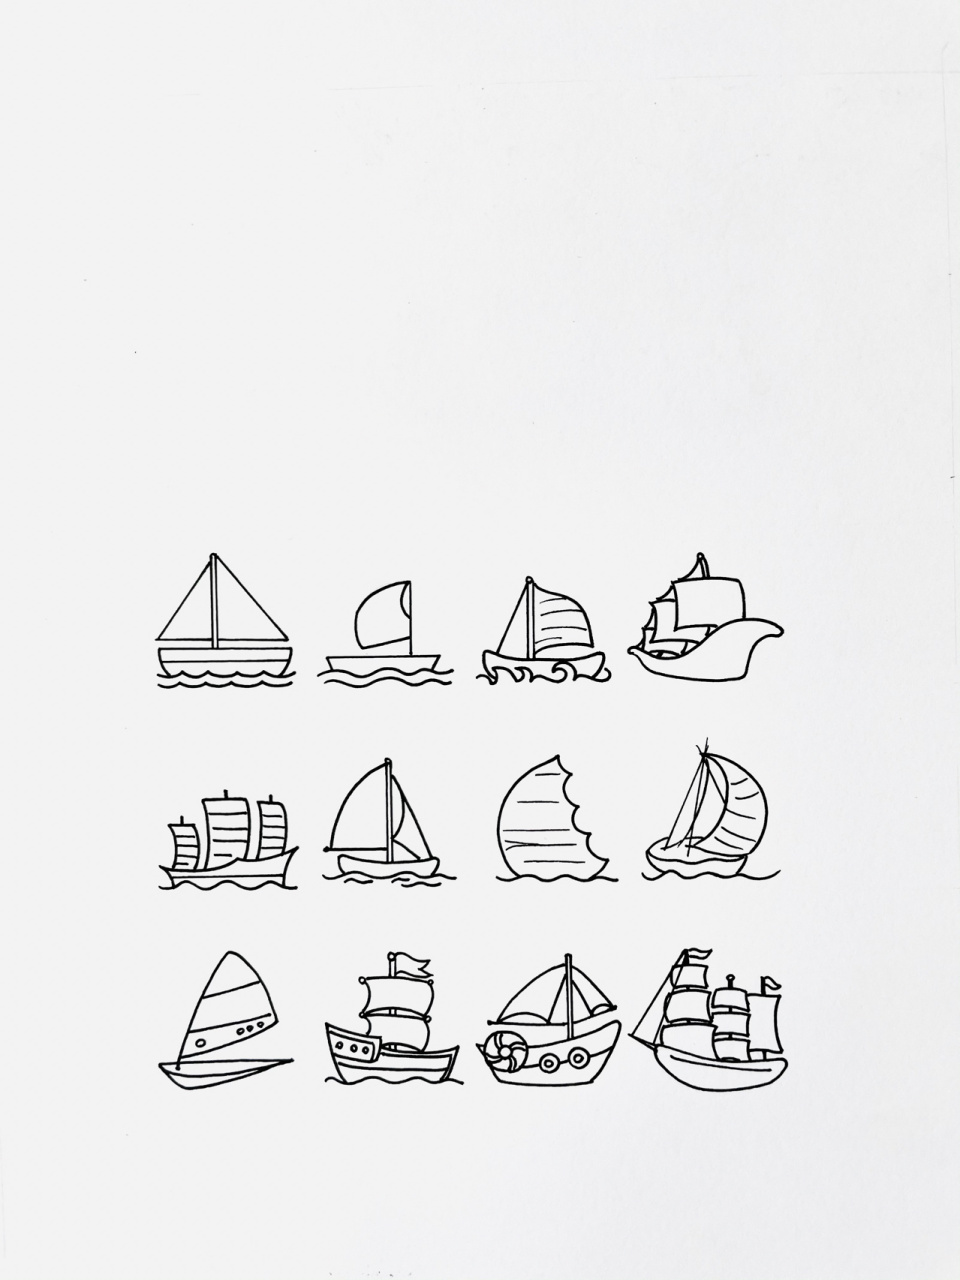 【简笔画】帆船7715 分享一组帆船简笔画 还喜欢什么吖,留言给我